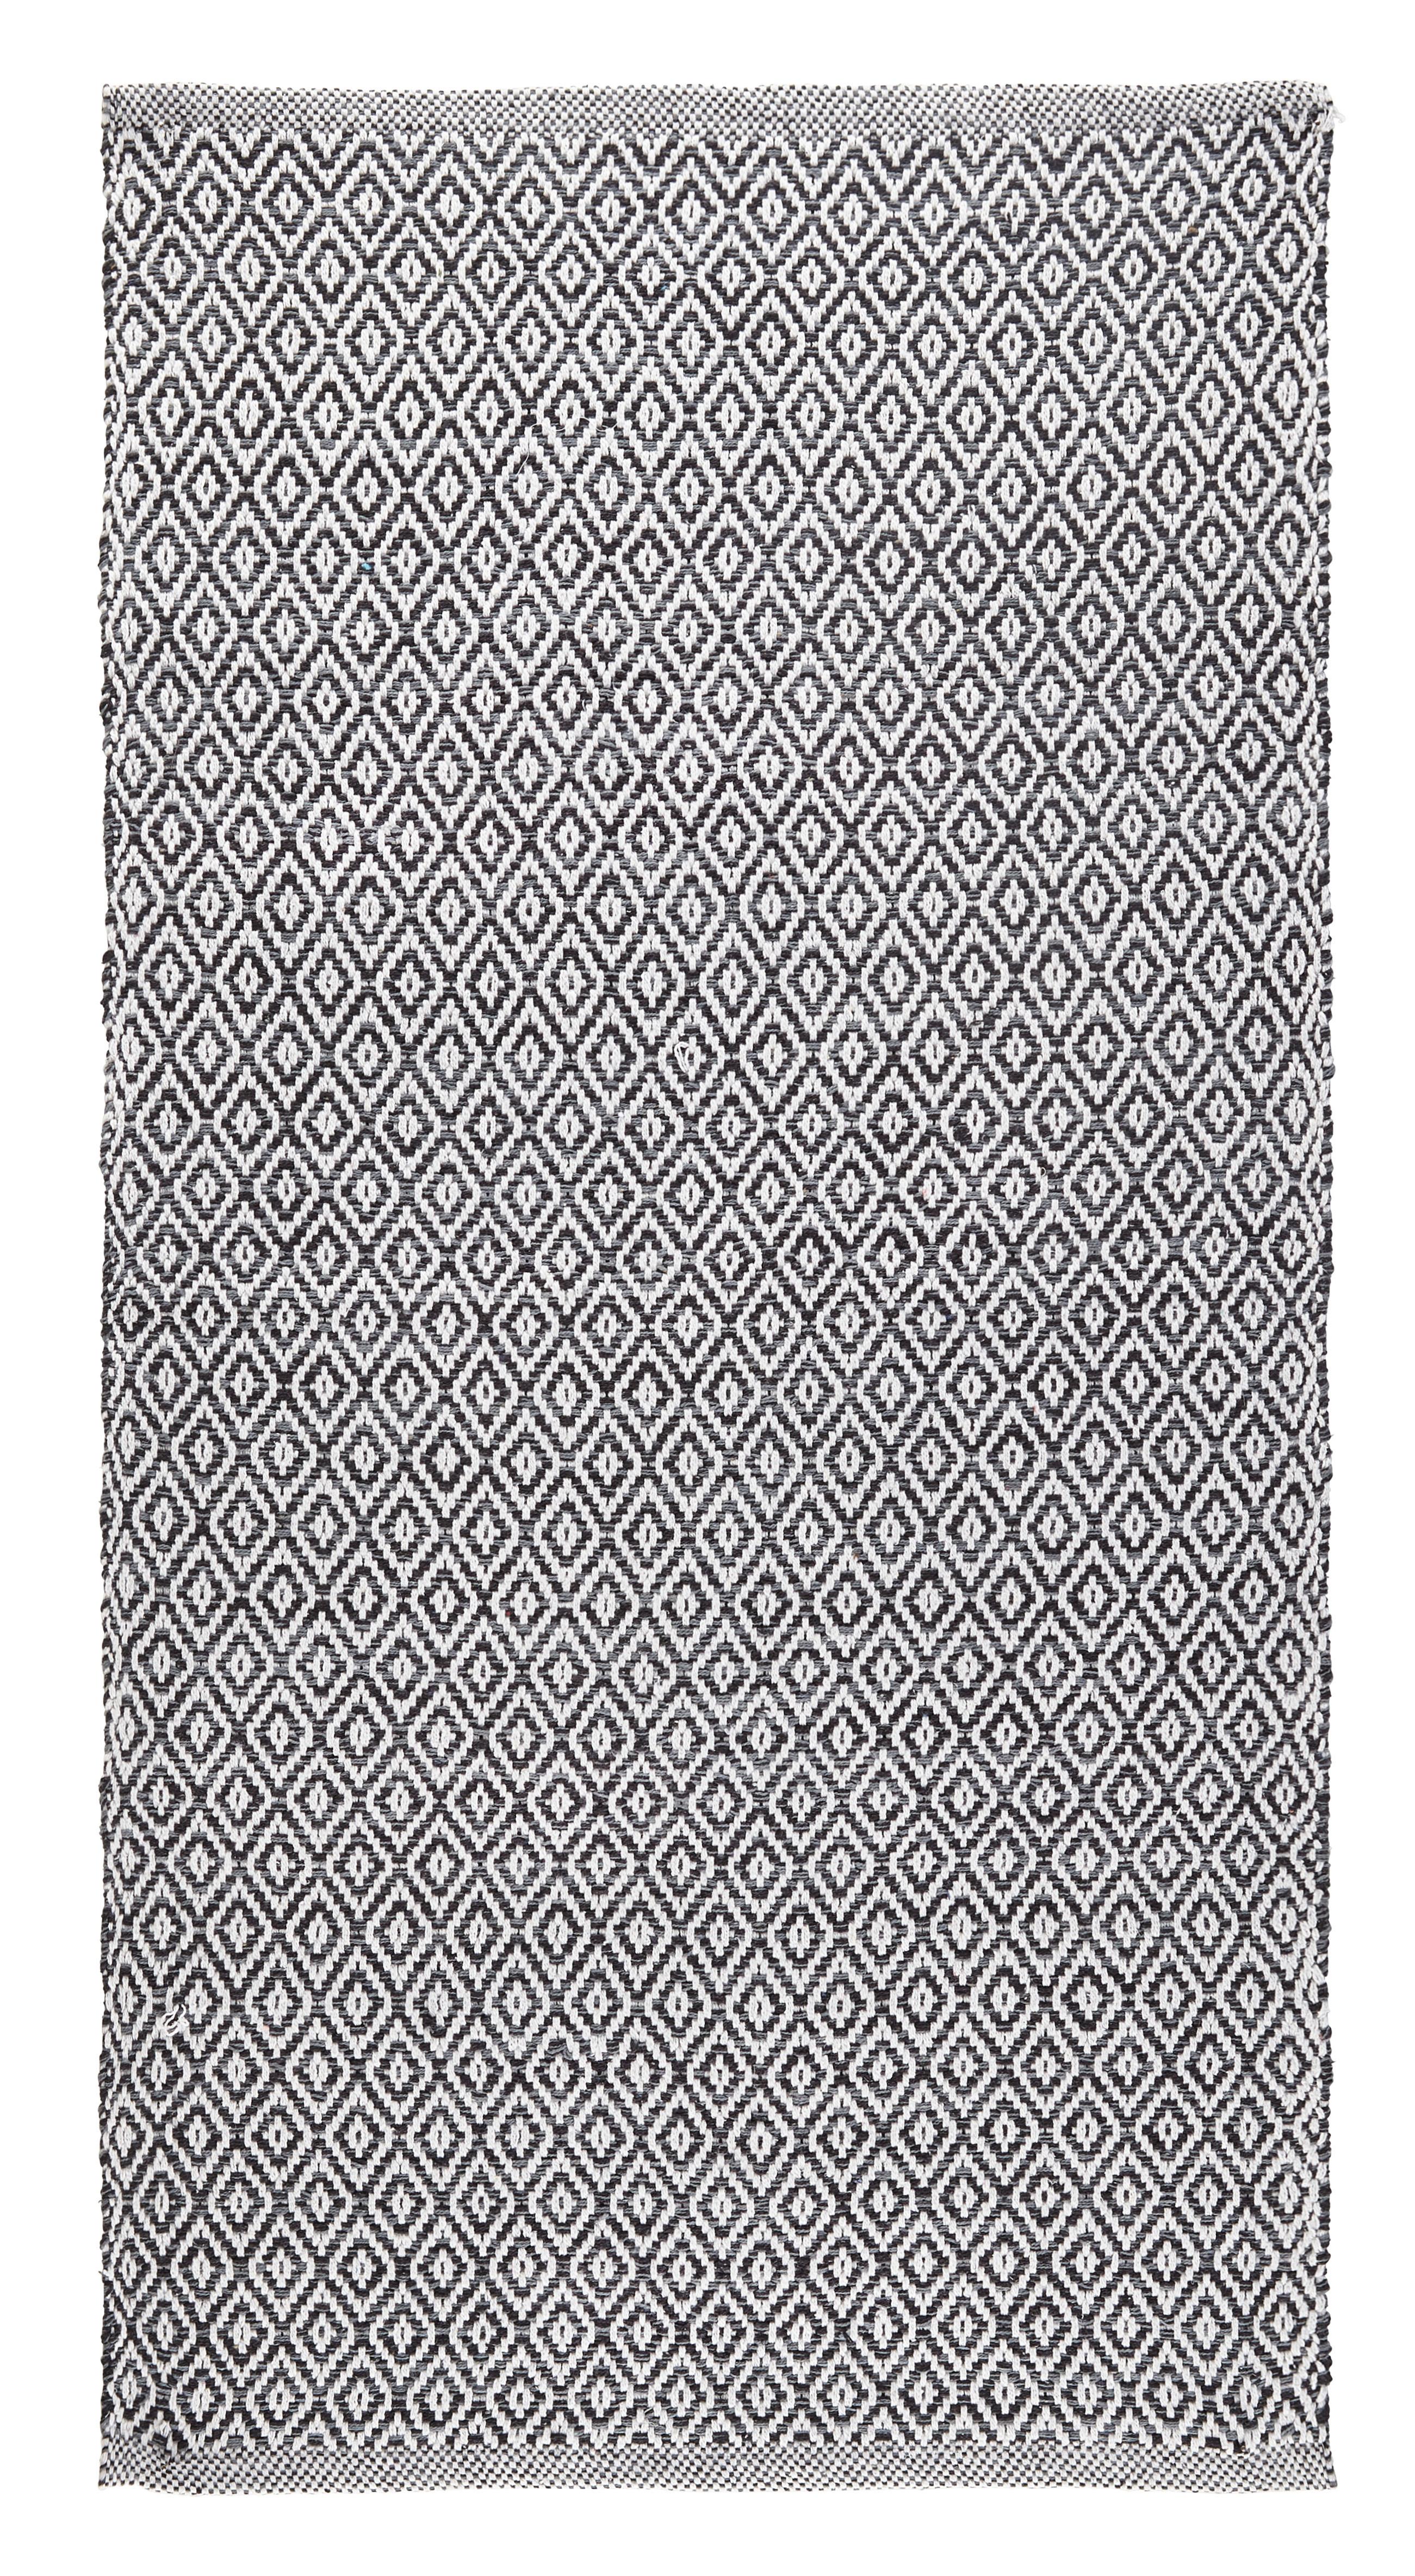 Covor țesut de mână CAROLA 1 - gri, Basics, textil (60/120cm) - Modern Living